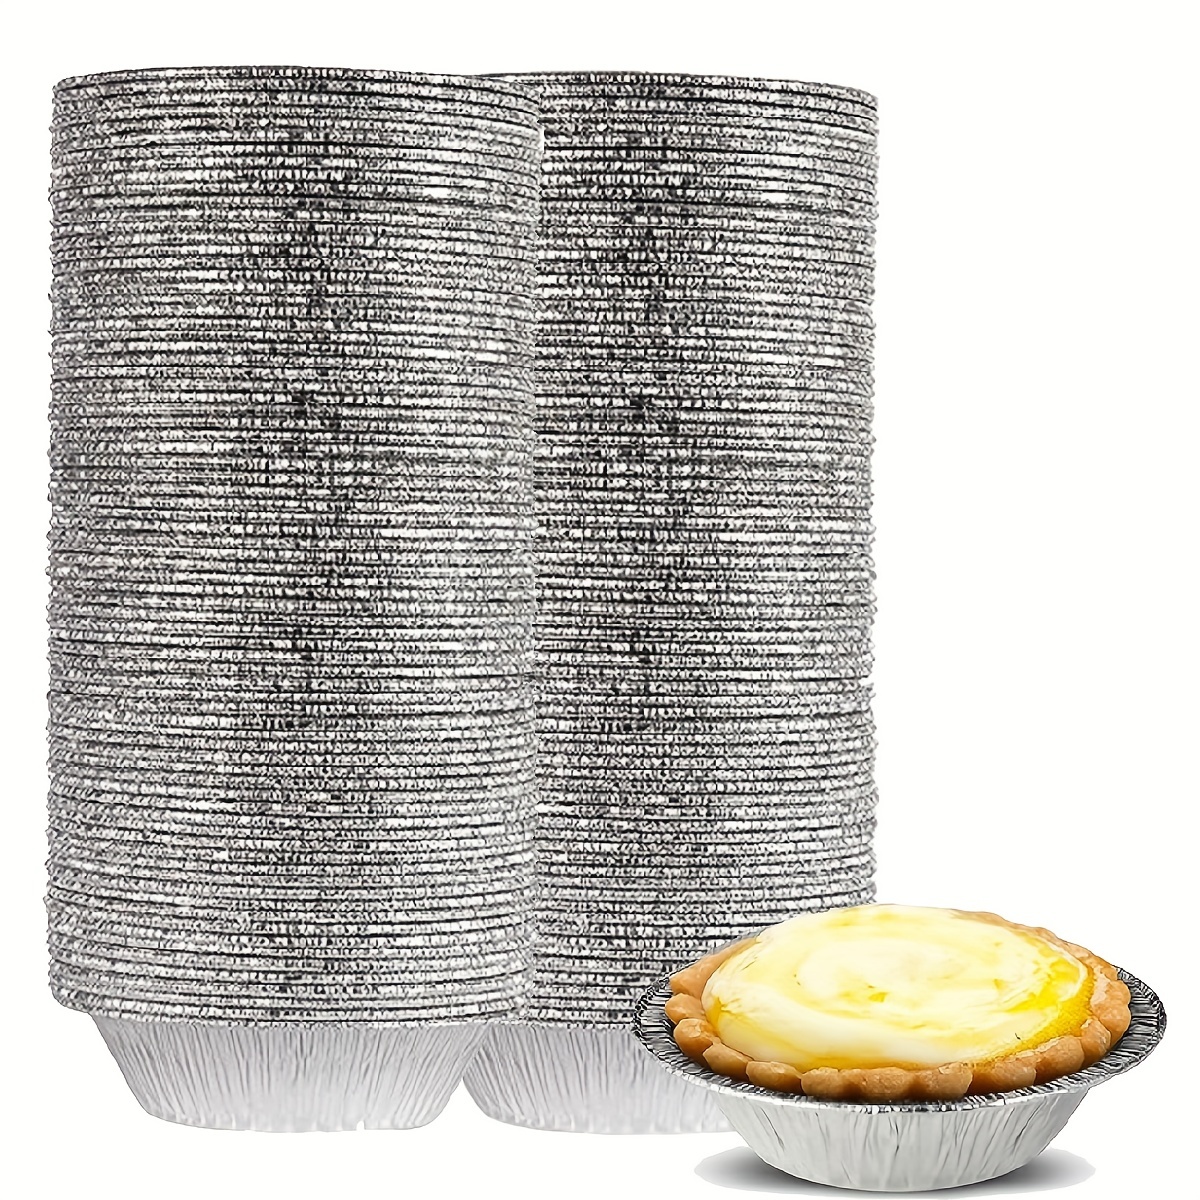 5 Inch Disposable Round Foil Pie Pan,Aluminum Foil Baking Pie Tins